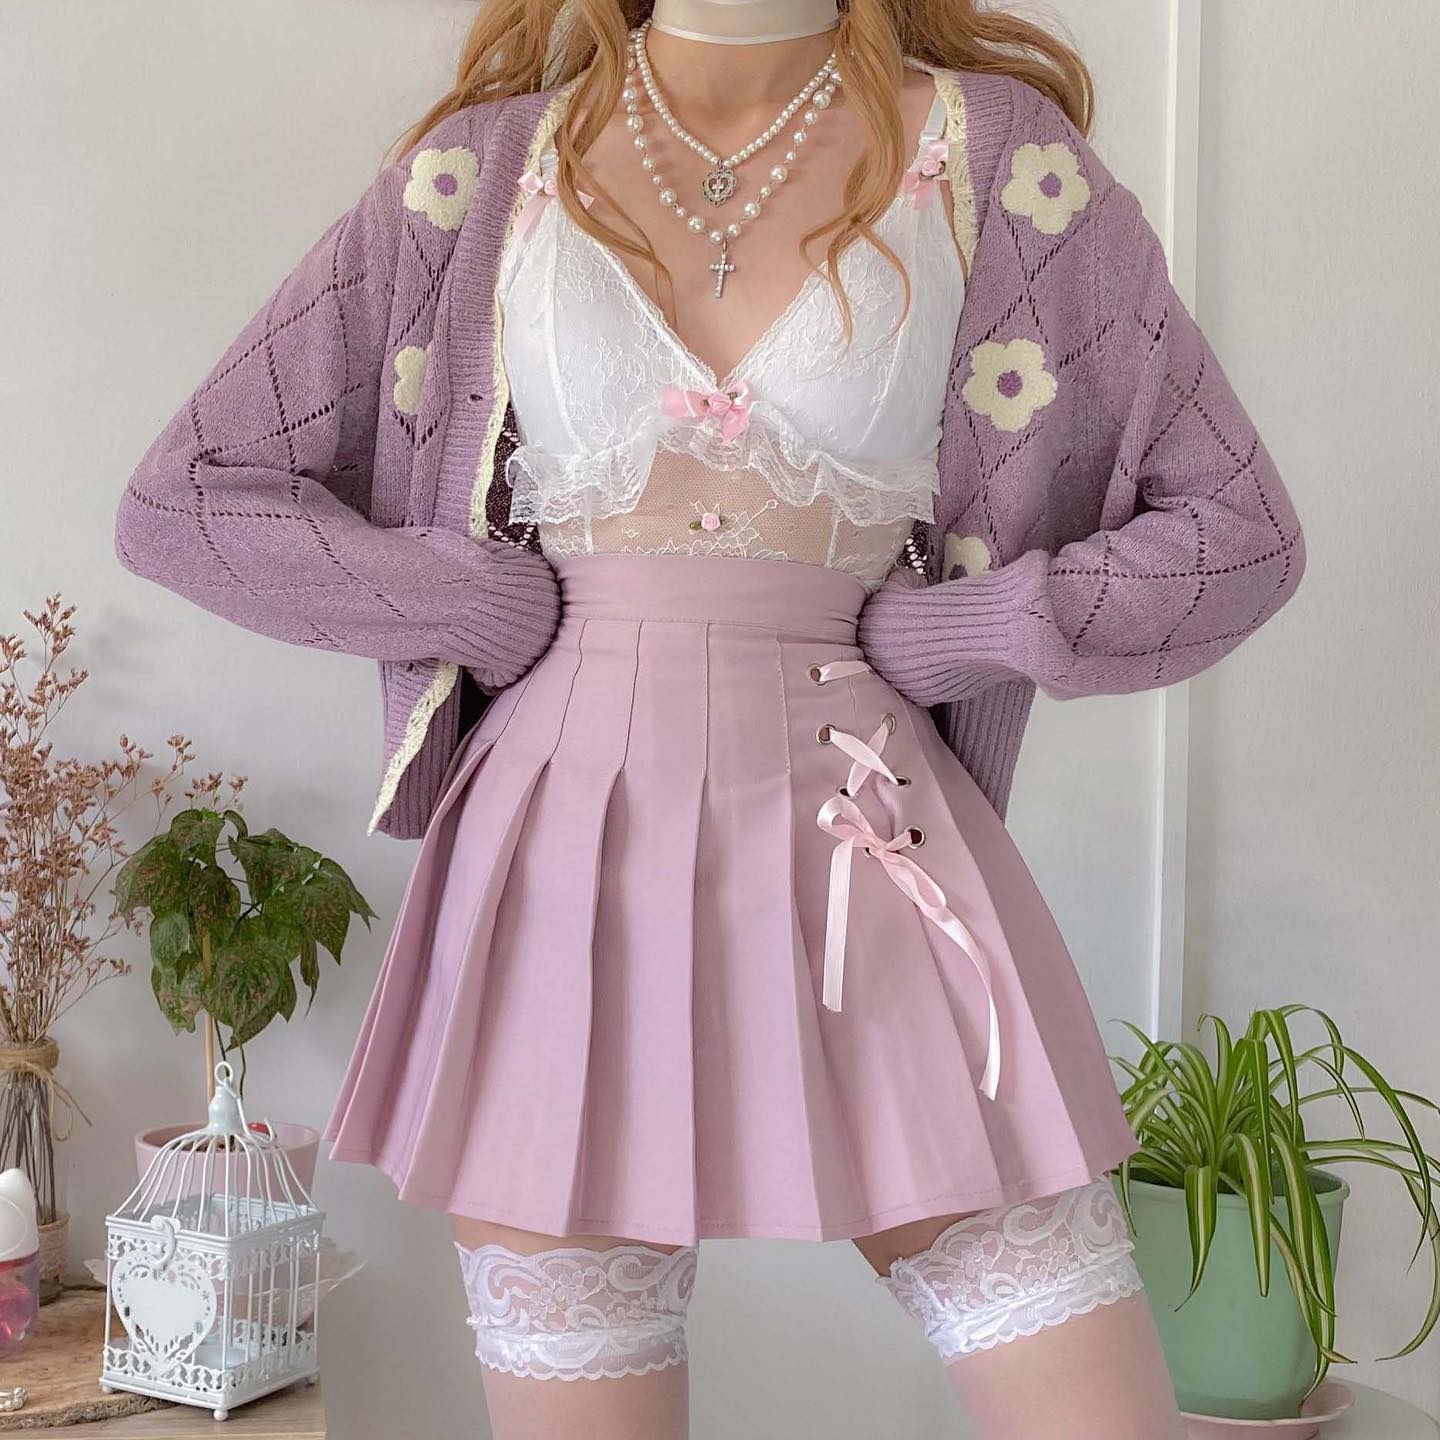 Dollette Kawaii Pink Pleated Skirt High Waist